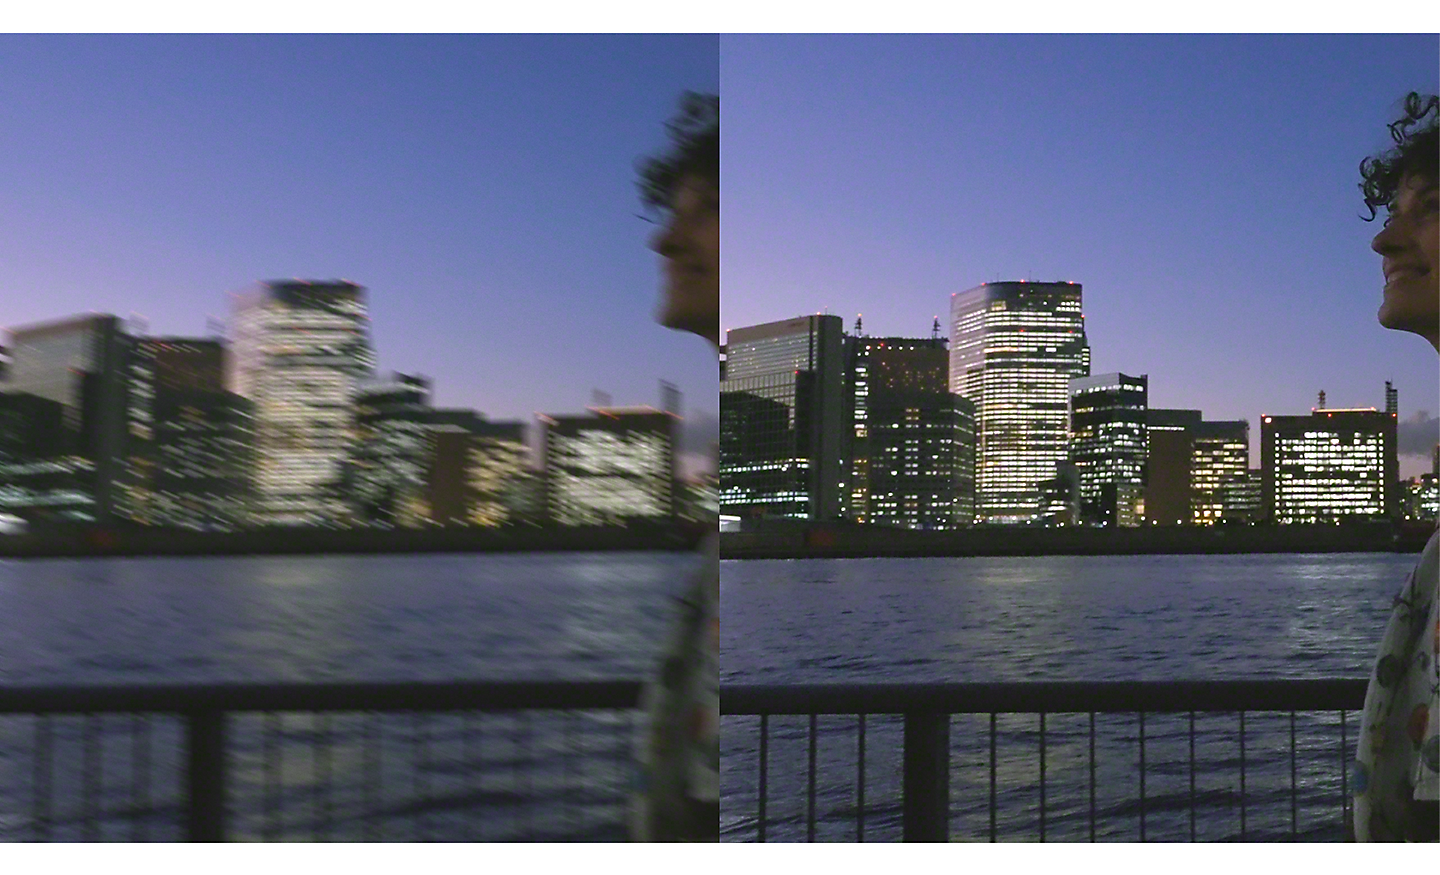 Dobbelt bilde av et bylandskap om kvelden – bildet til venstre er uskarpt, det til høyre er skarpt